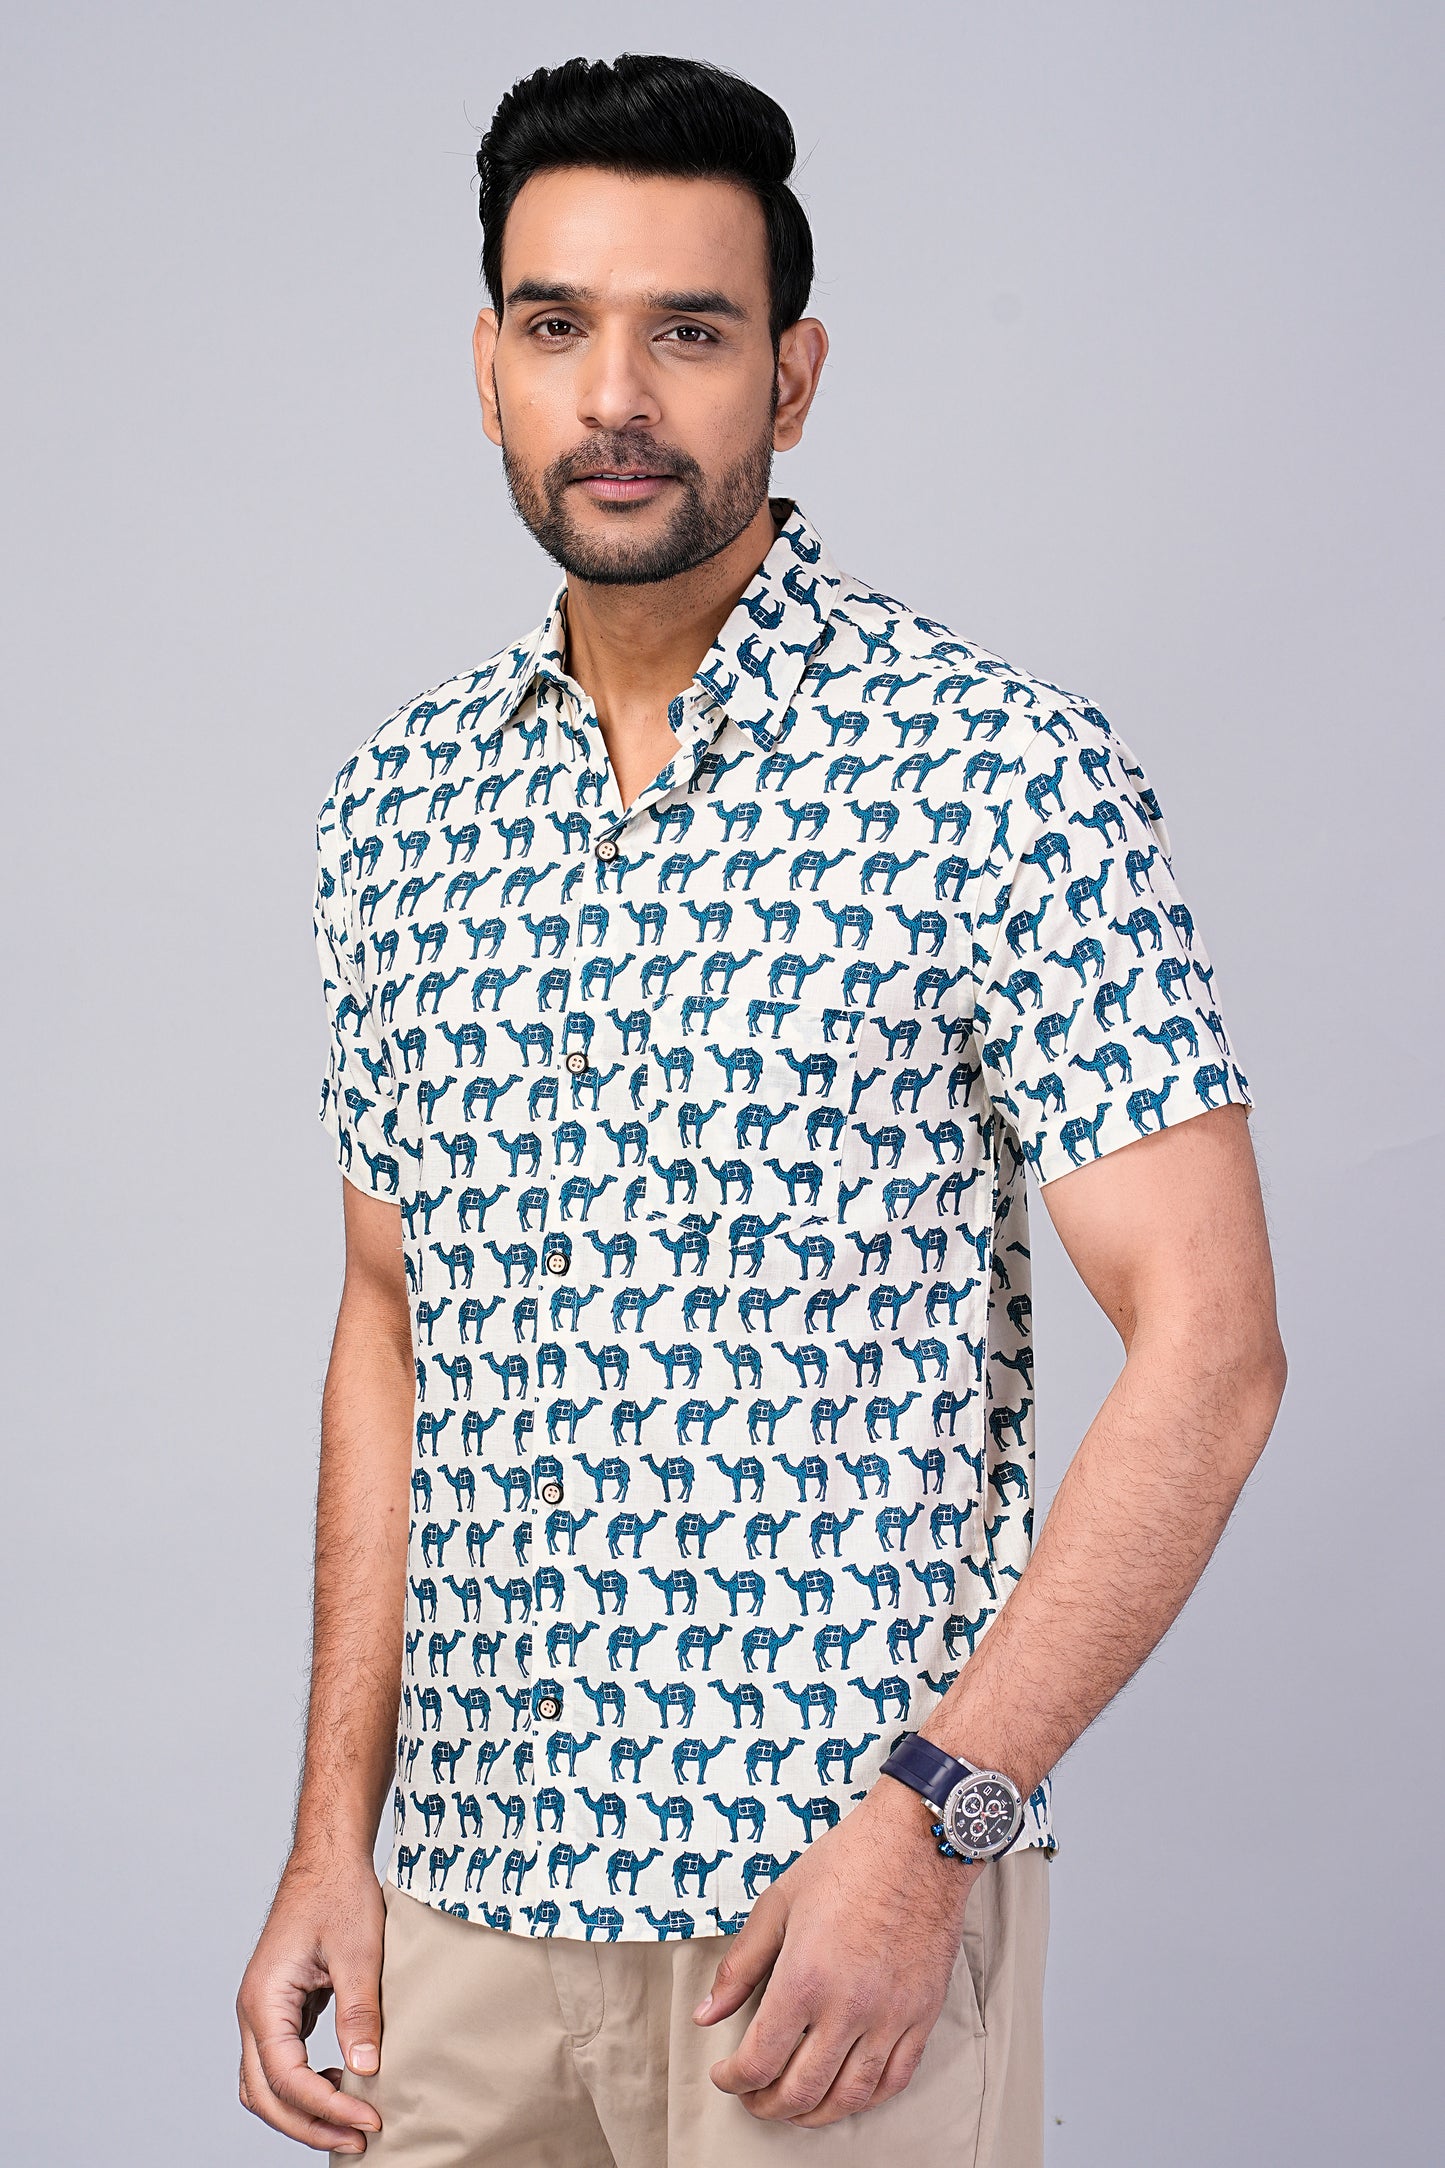 Men's Camel Printed Half-Sleeves shirts